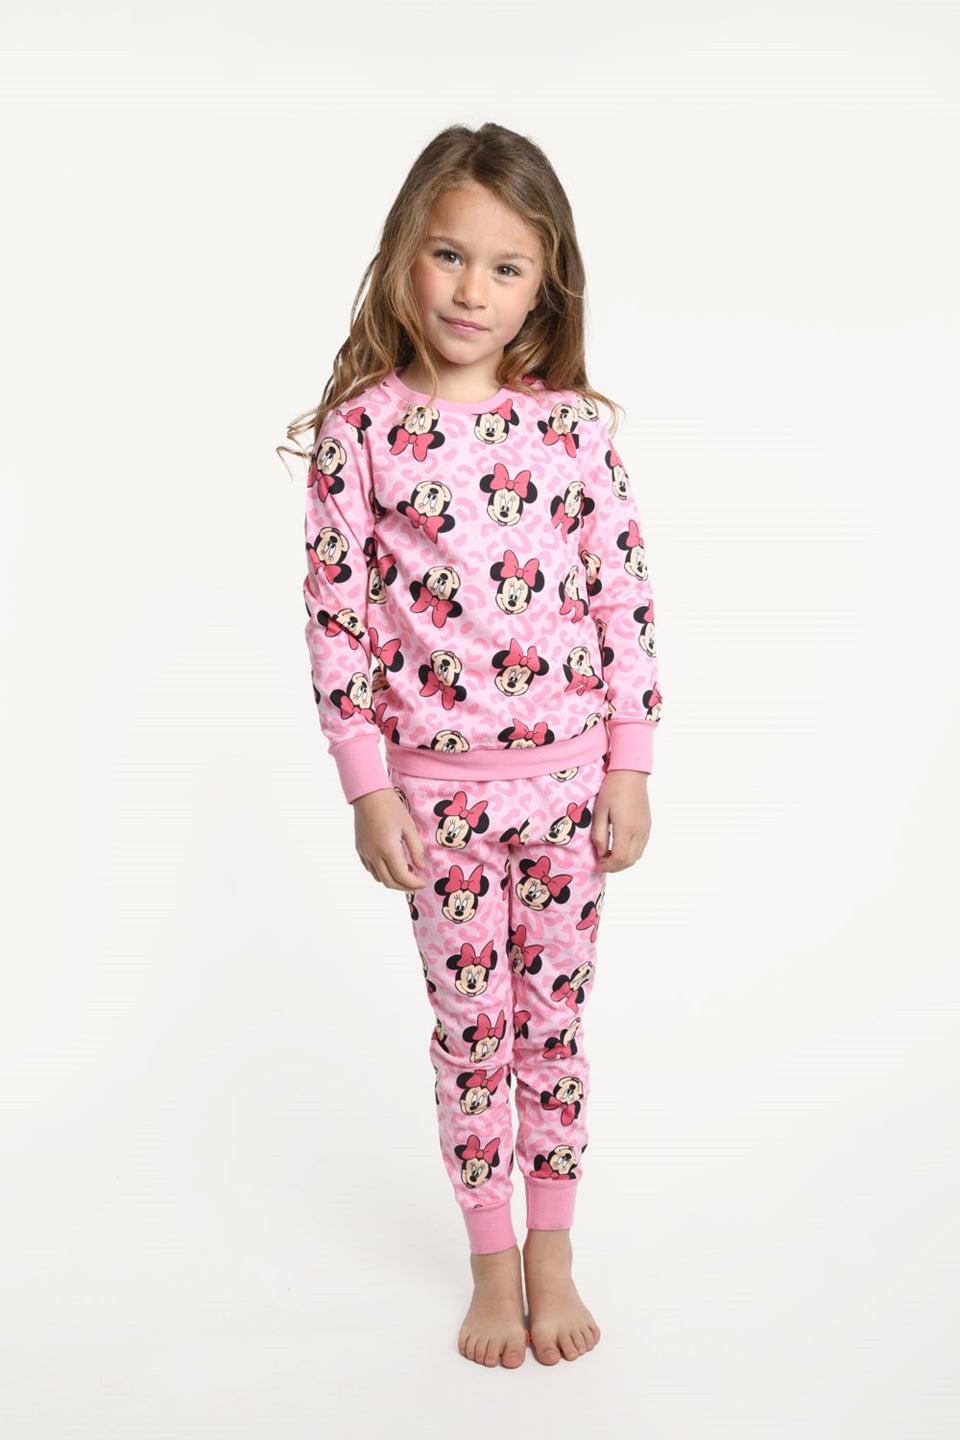 Детский пижамный комплект с Минни Маус Brand Threads Disney, розовый короткий пижамный комплект с минни маус disney мультиколор